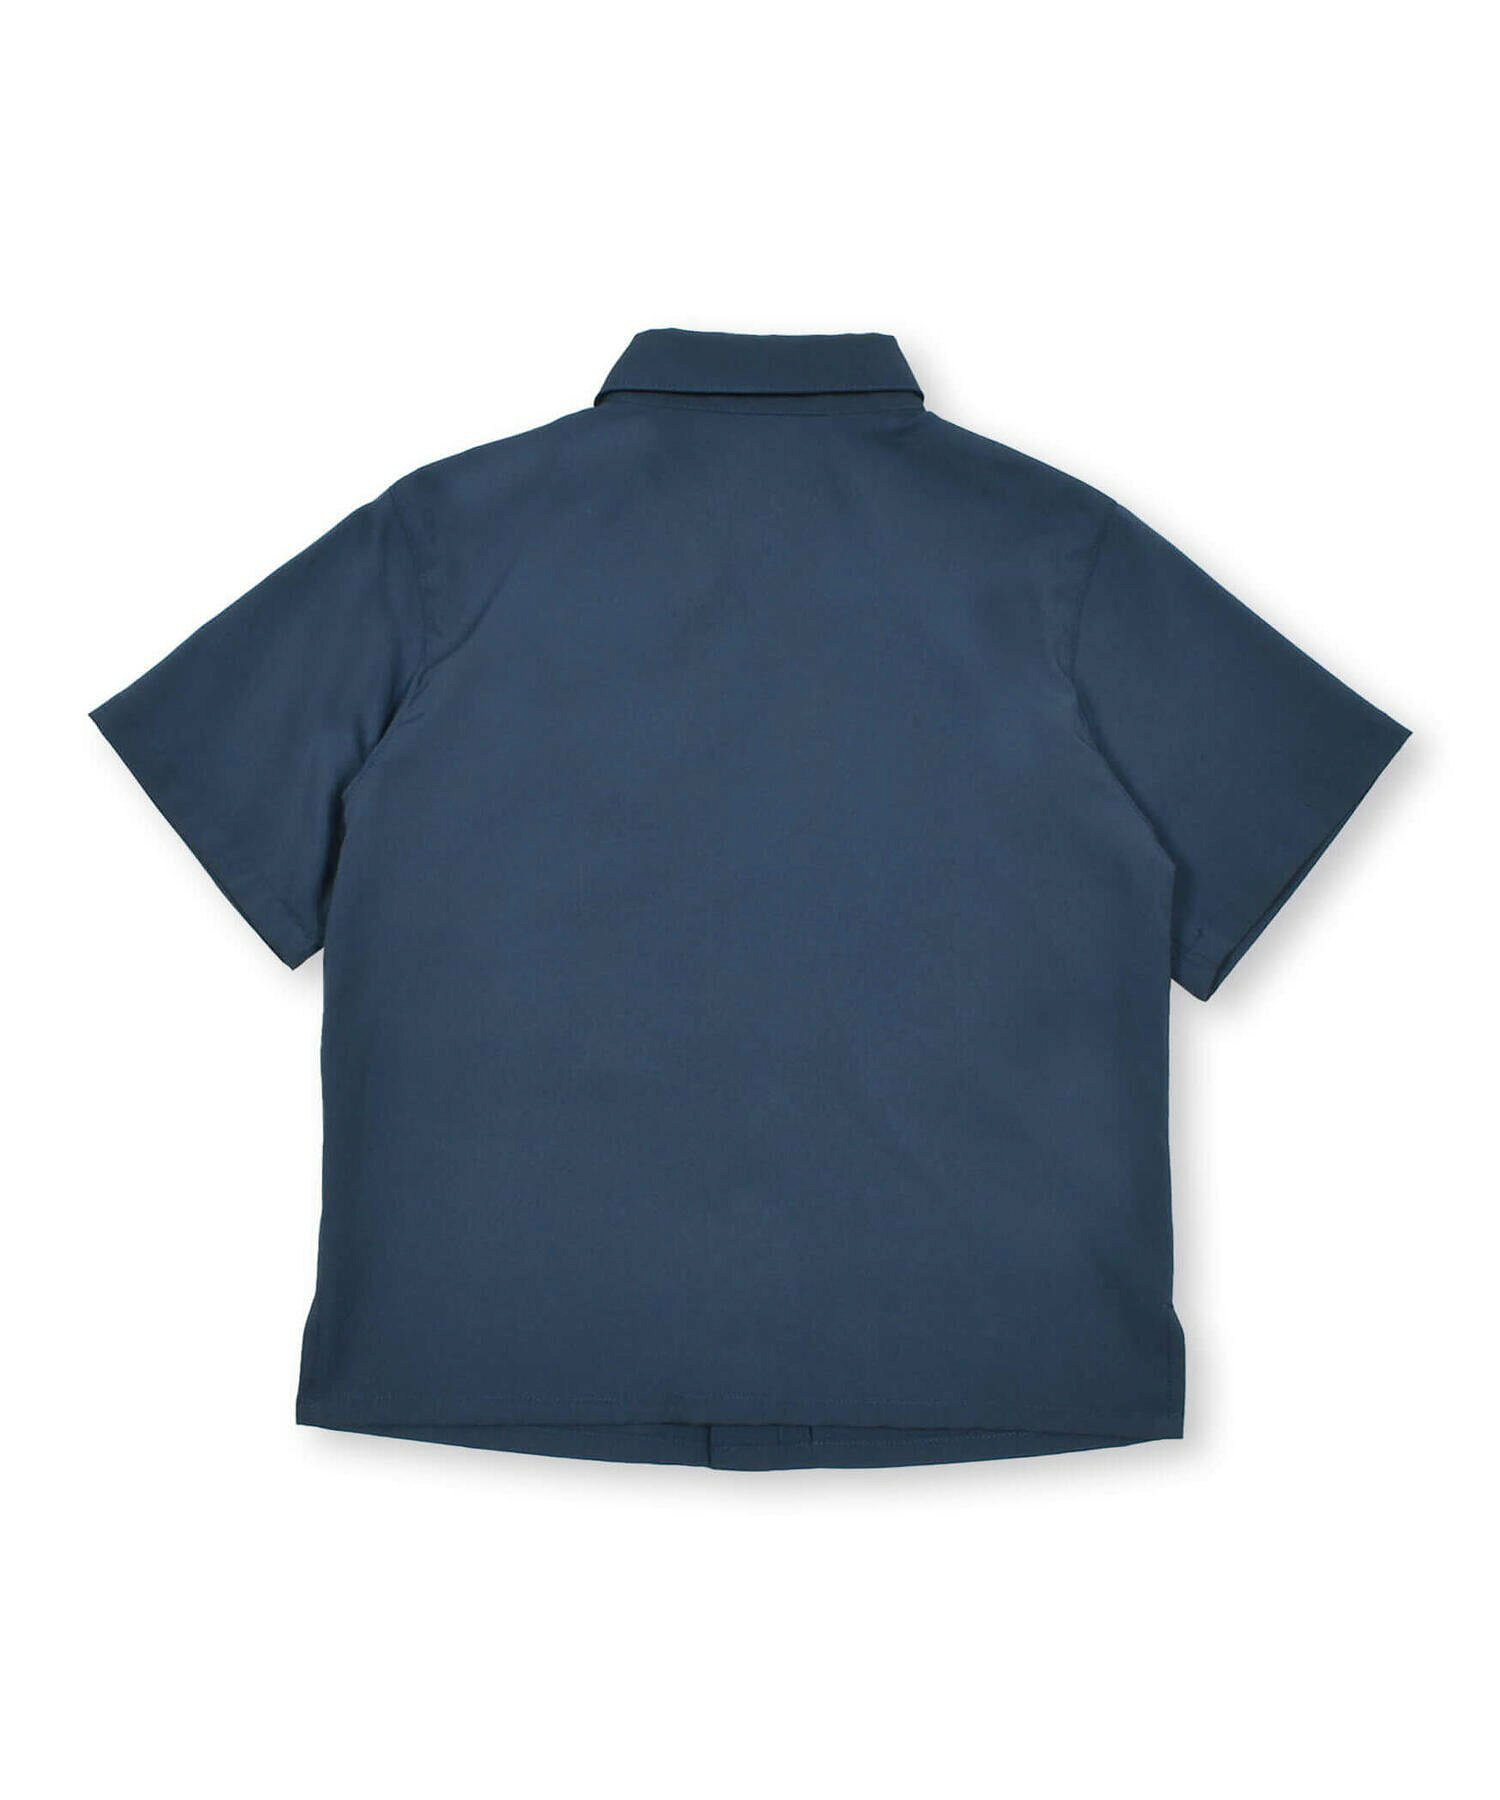 【お揃い】ポリエステルポプリンファスナーポケットシャツ(100~160cm)